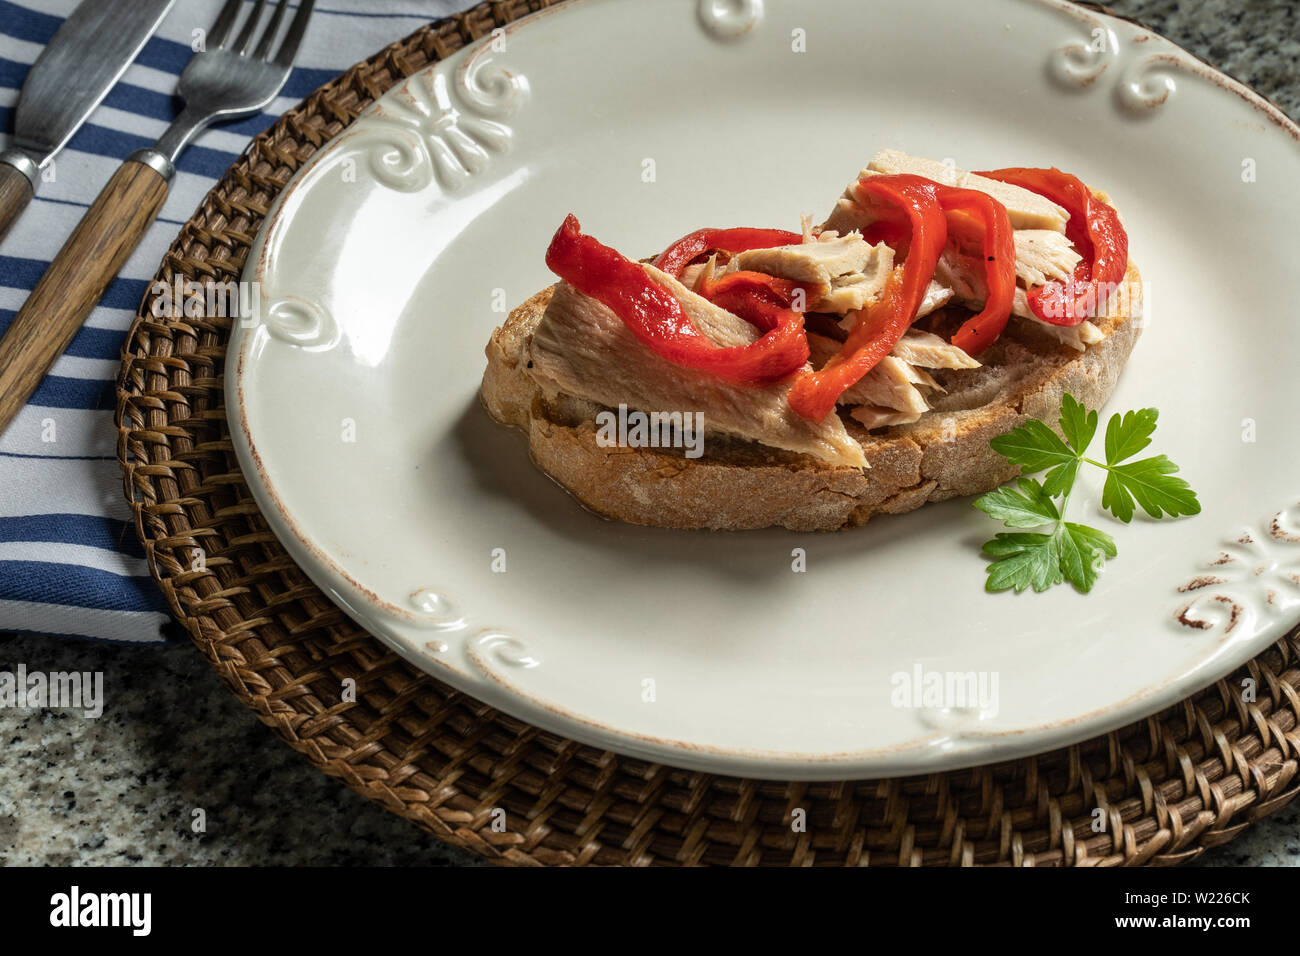 Aprire gustosi sandwich o toast con tonno e peperoni rossi sulla piastra. Cucina mediterranea Foto Stock